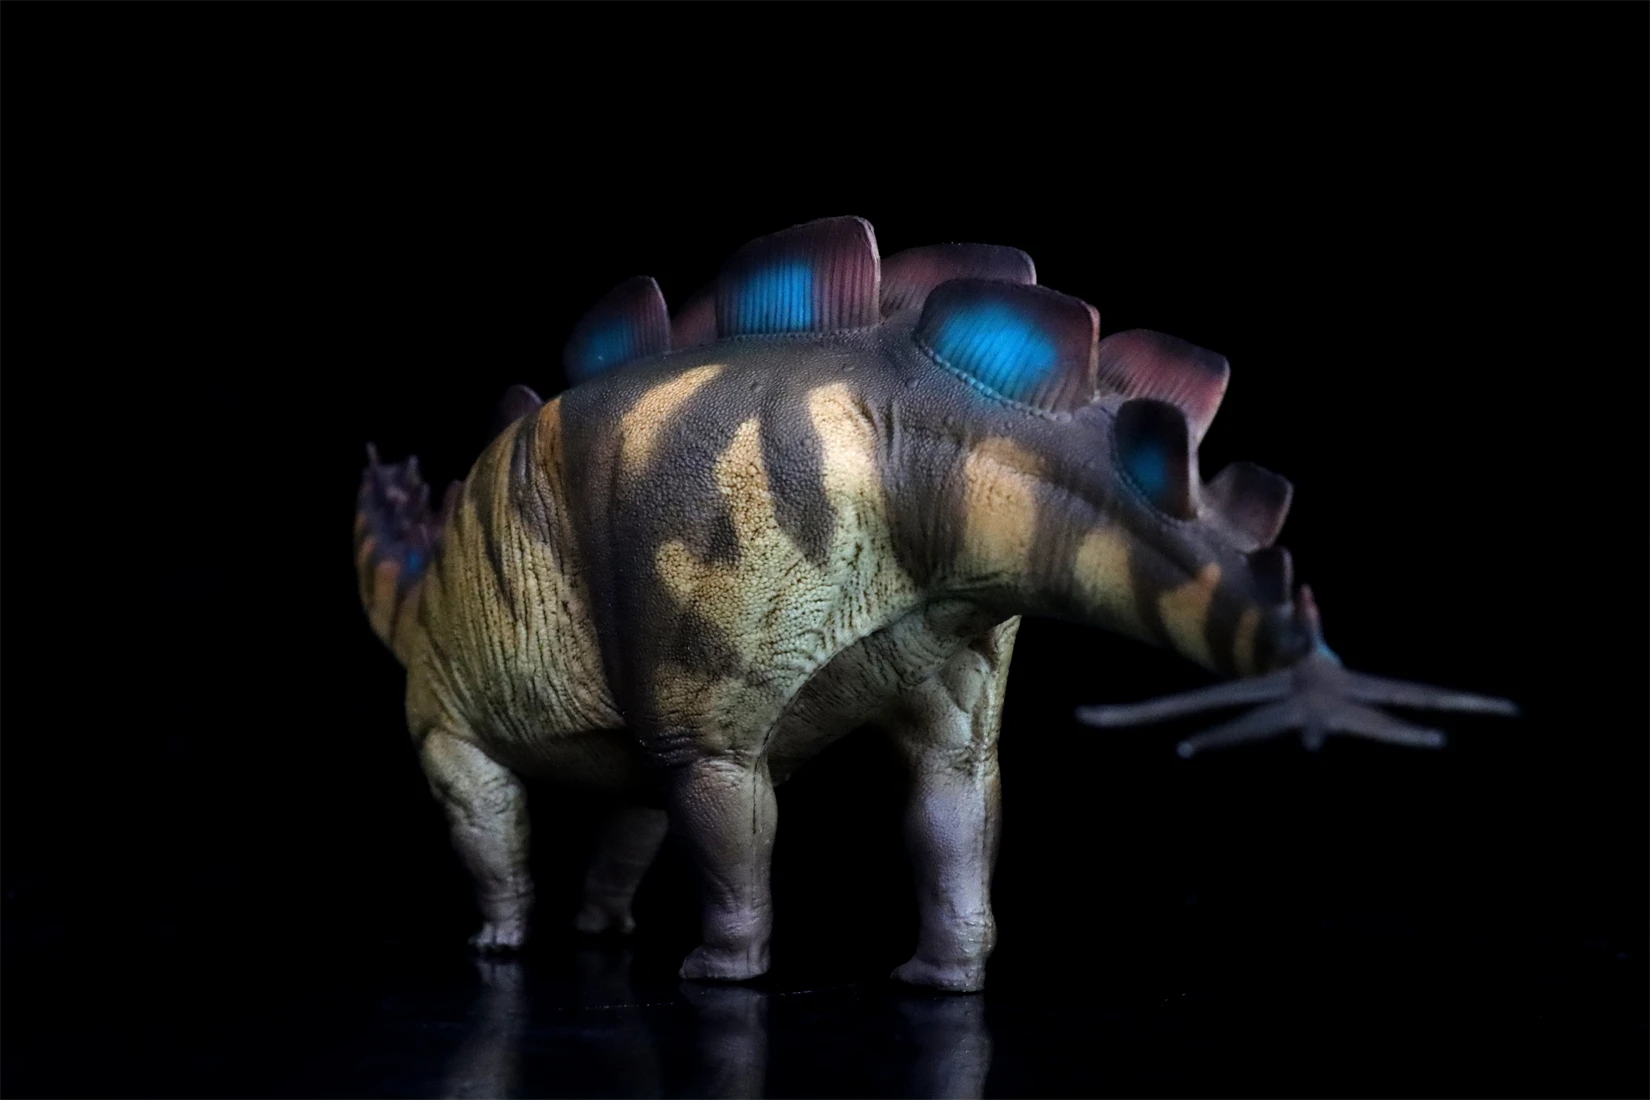 Pnso-恐竜のモデルsteosururance、恐竜先史時代の動物のシーン、装飾ギフトコレクション、科学像、82